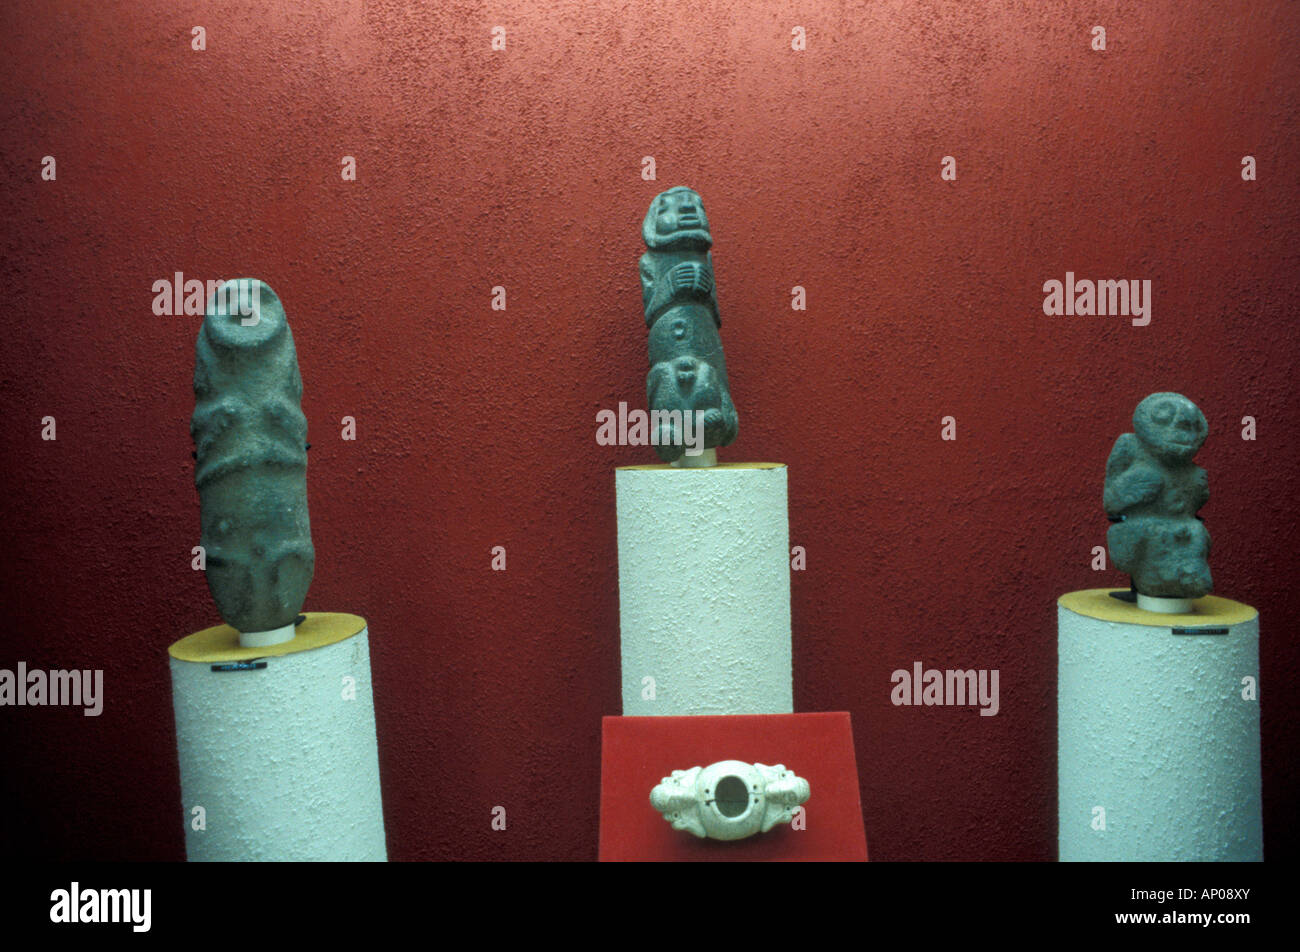 Taino stone figurines in the Museum of the Dominican Man or Museo del Hombre Dominicano, Santo Domingo, Dominican Republic Stock Photo